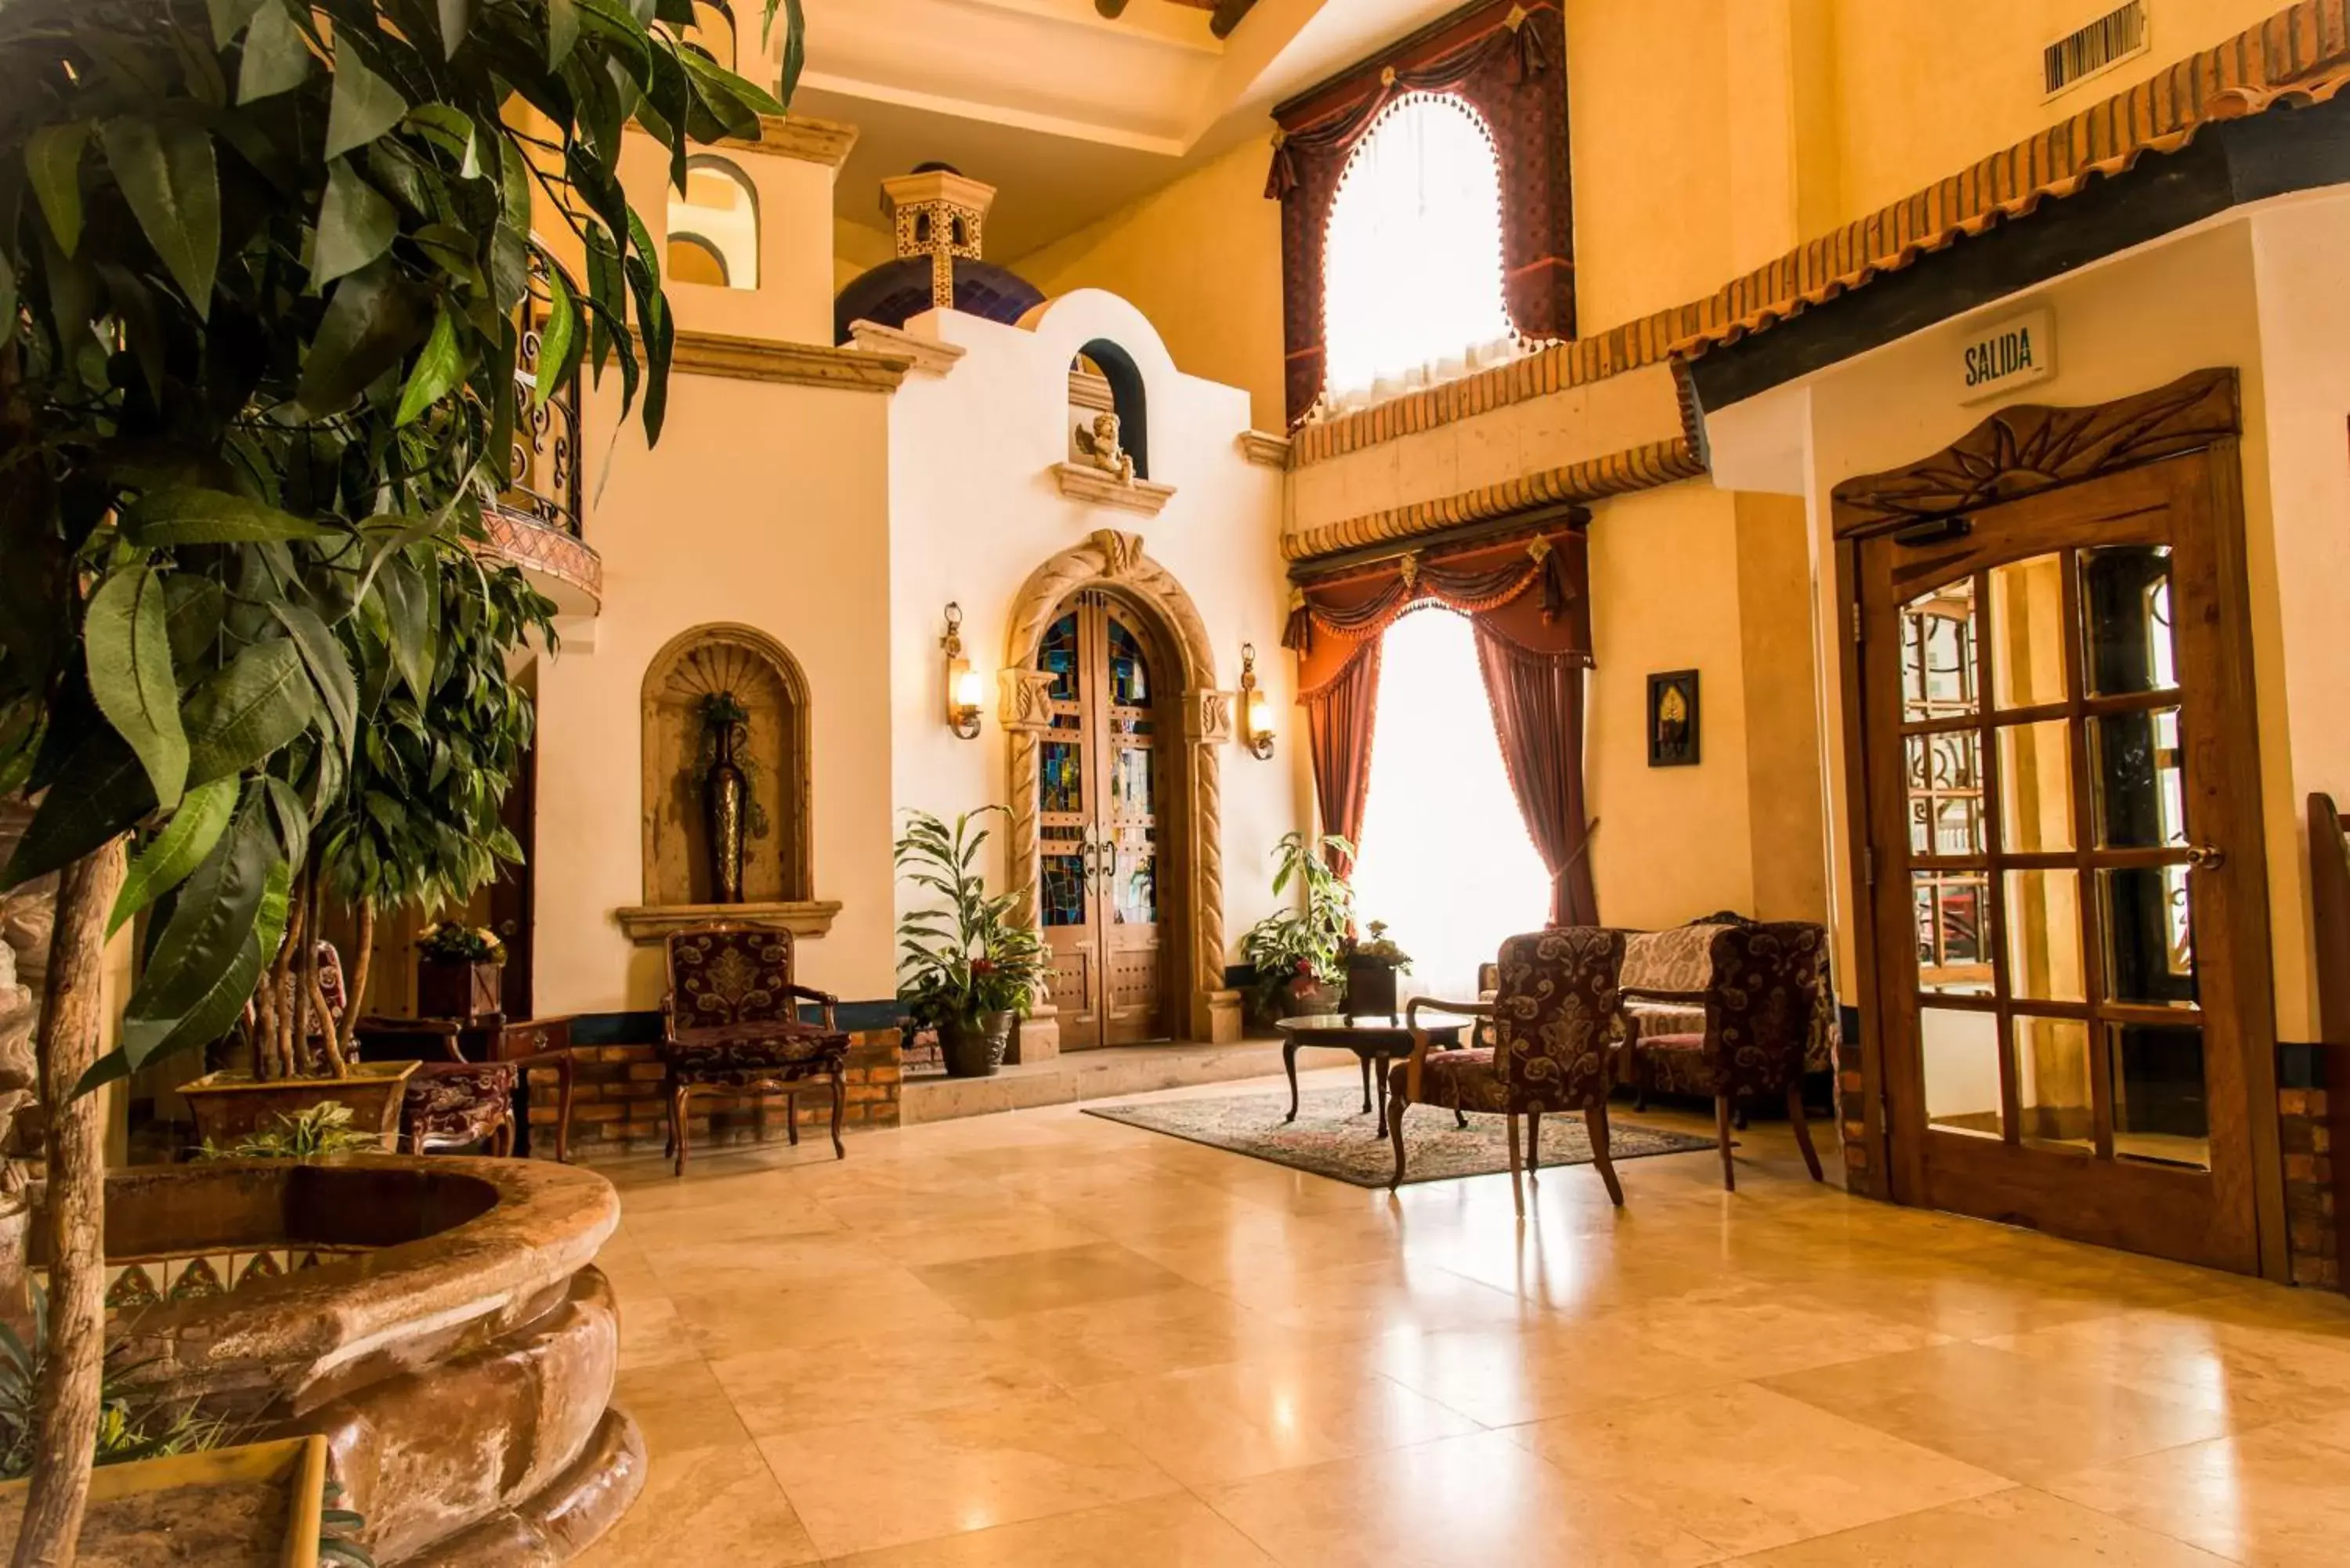 Lobby or reception in Hotel María Bonita Consulado Americano